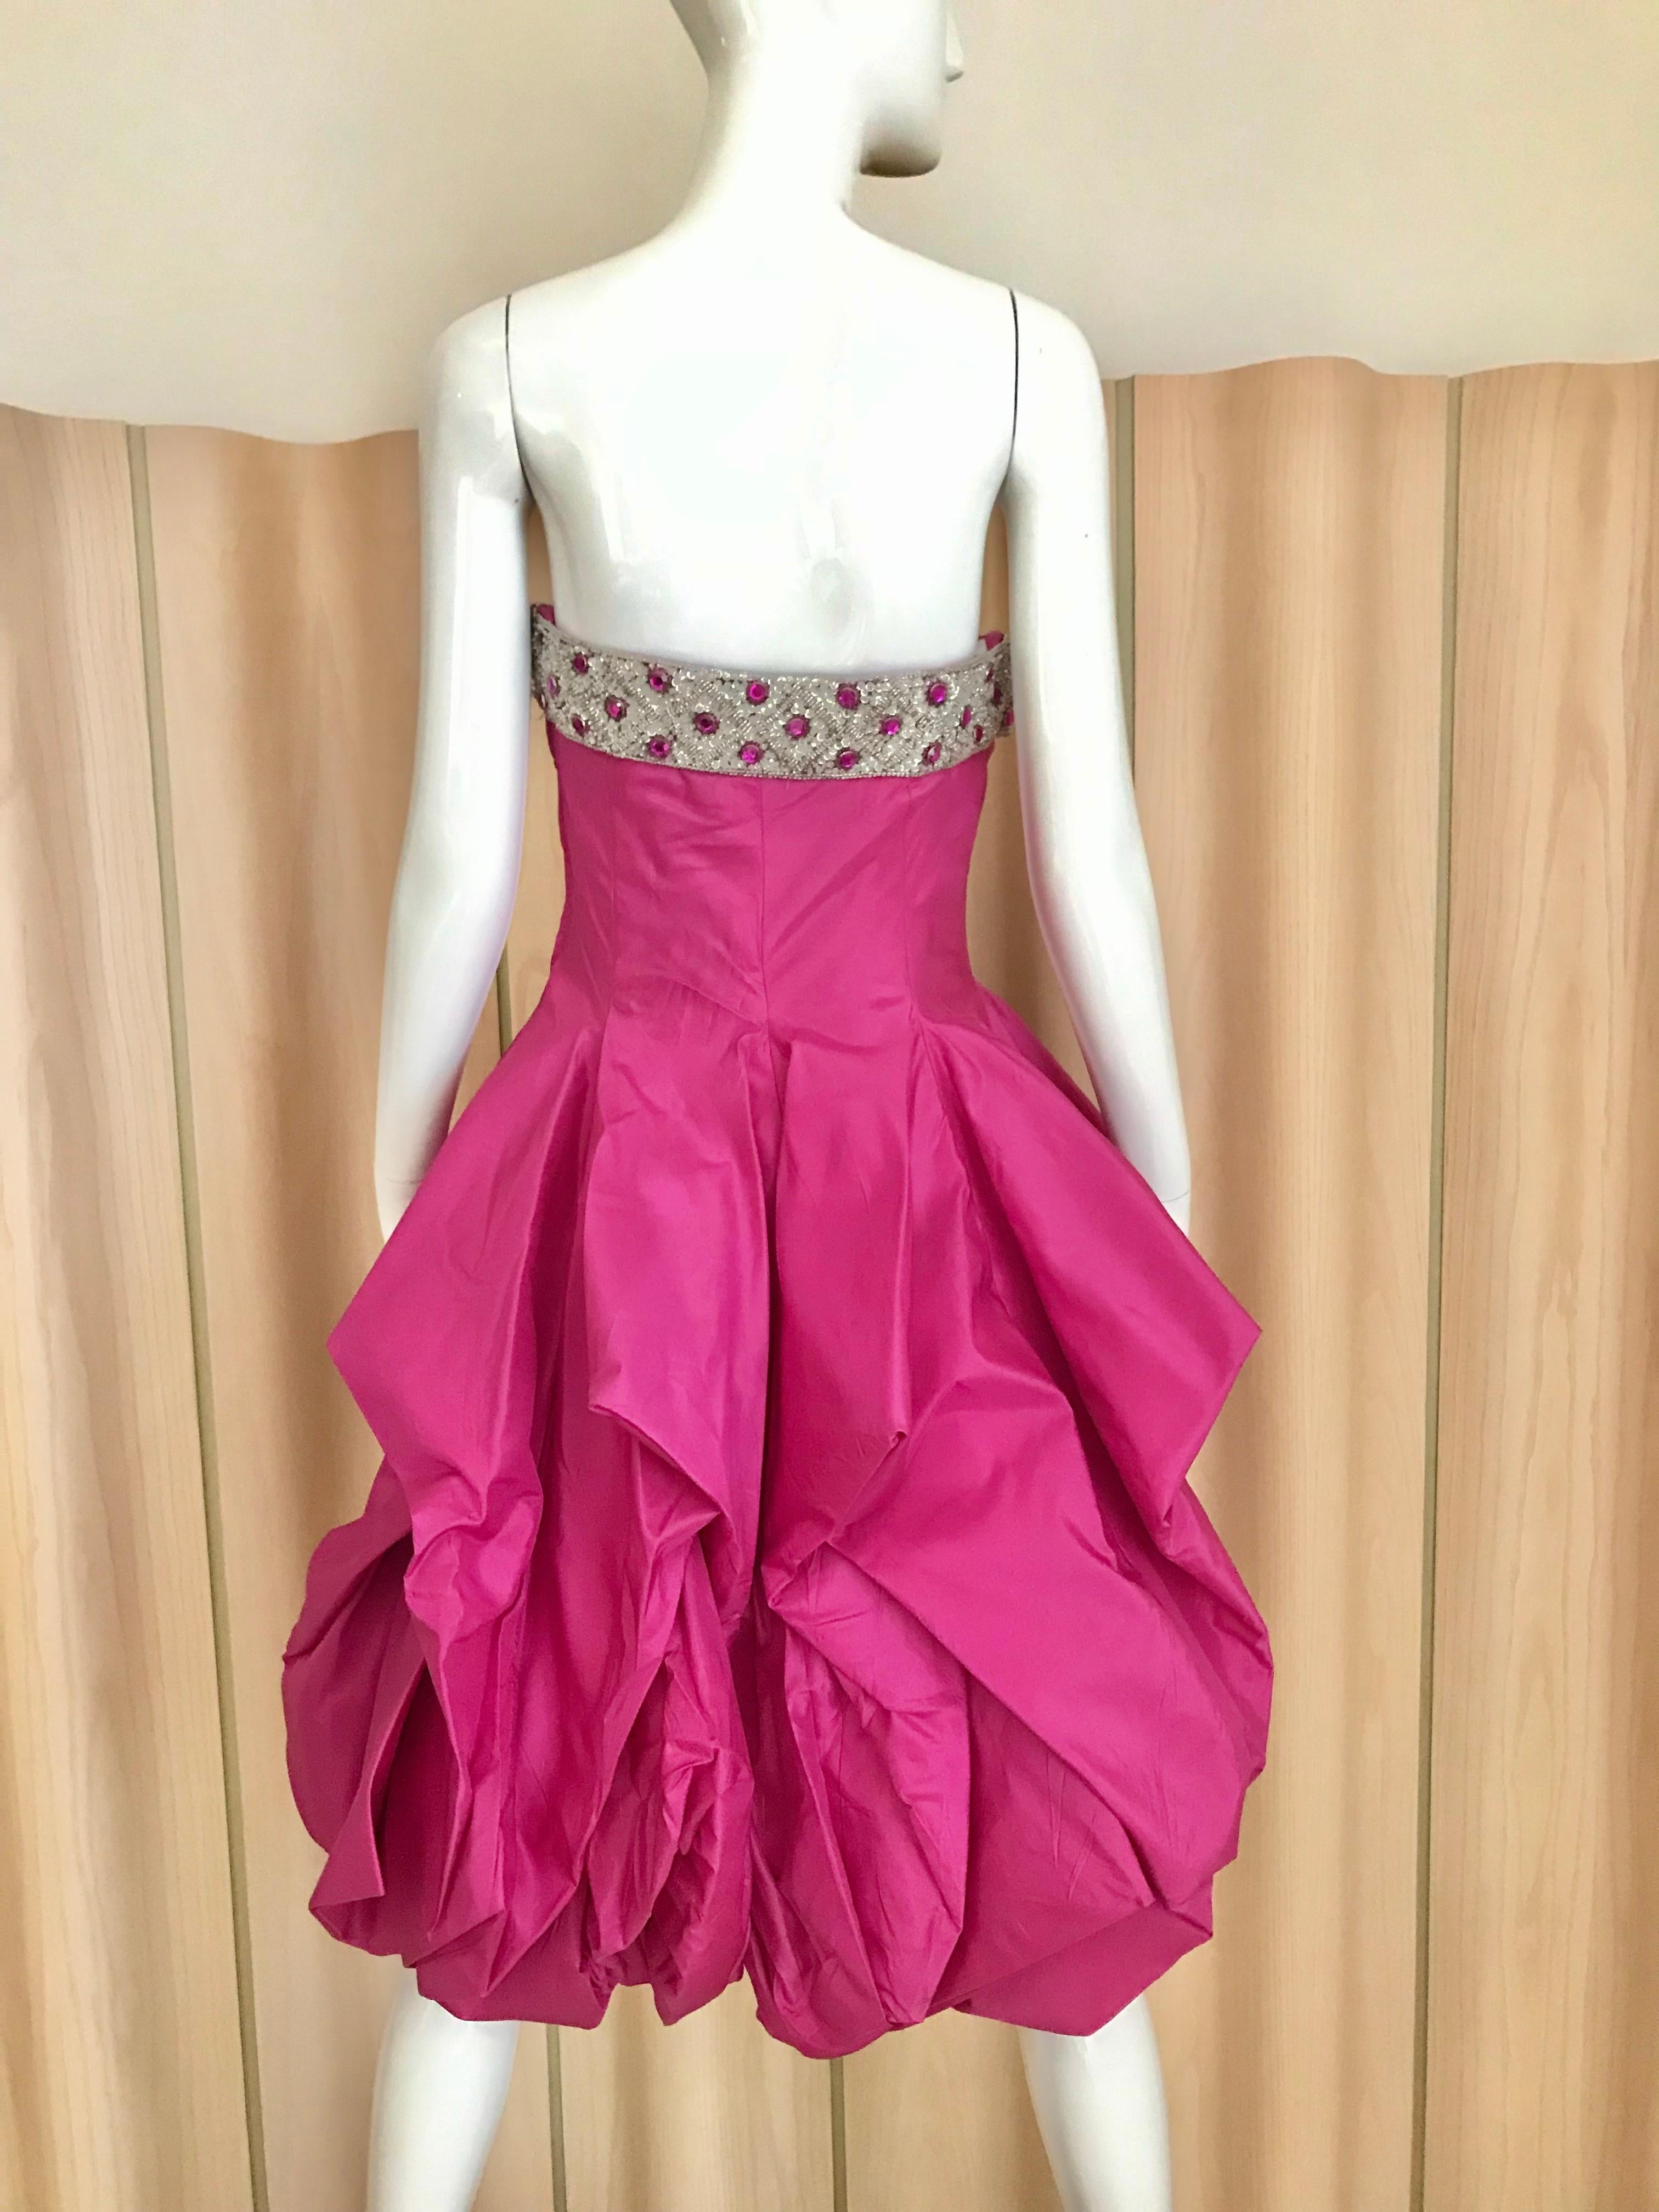 Vintage 1950s Hot Pink Seide trägerlosen Cocktail-Kleid mit Perlen Brust und Schößchen Saum.
Büste: 34 Zoll / Taille: 29